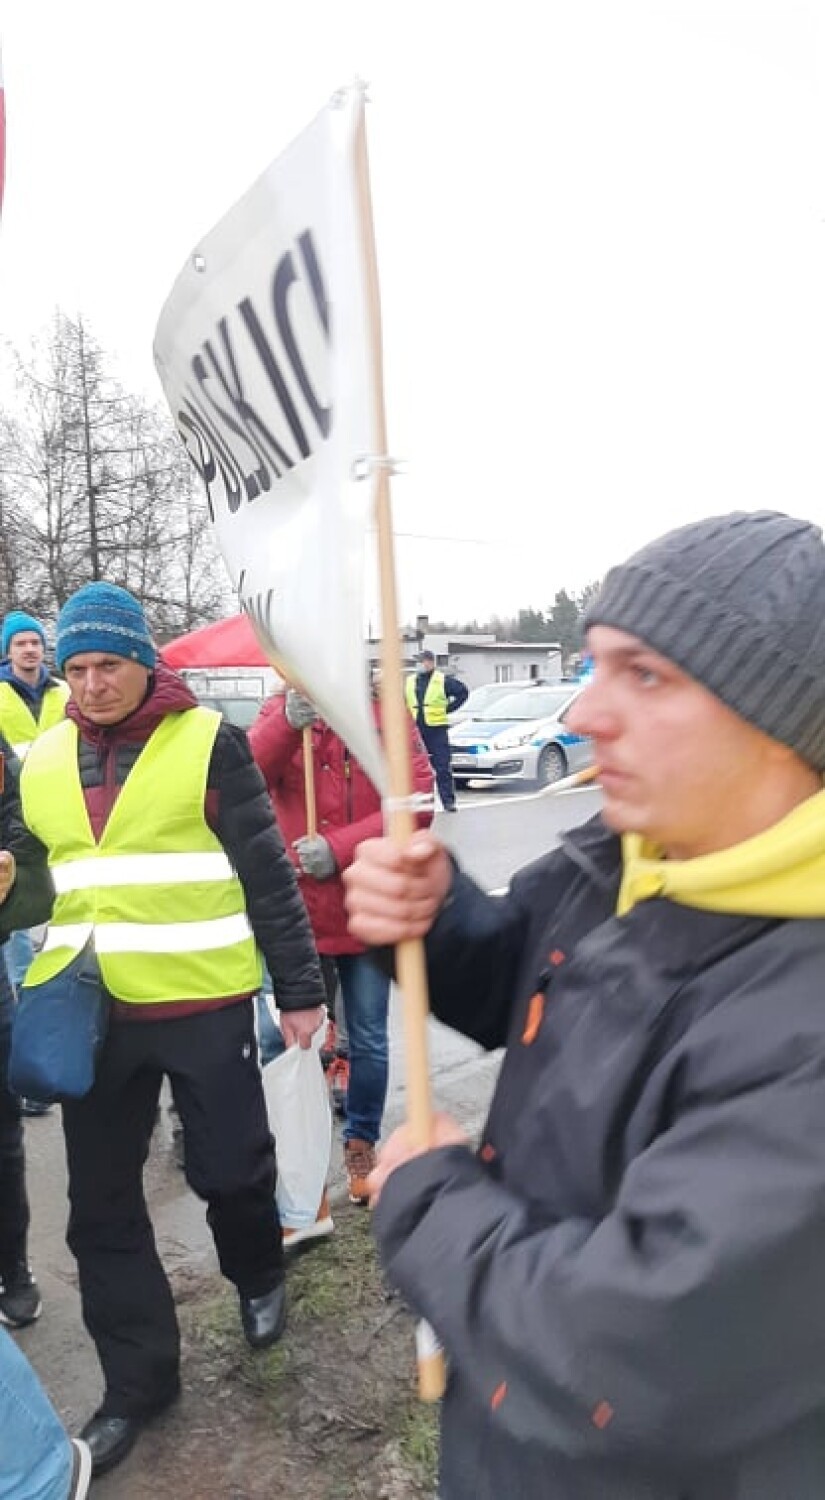 Protest rybaków w Kębłowie. Wśród postulatów m.in. odblokowanie unijnych funduszy 